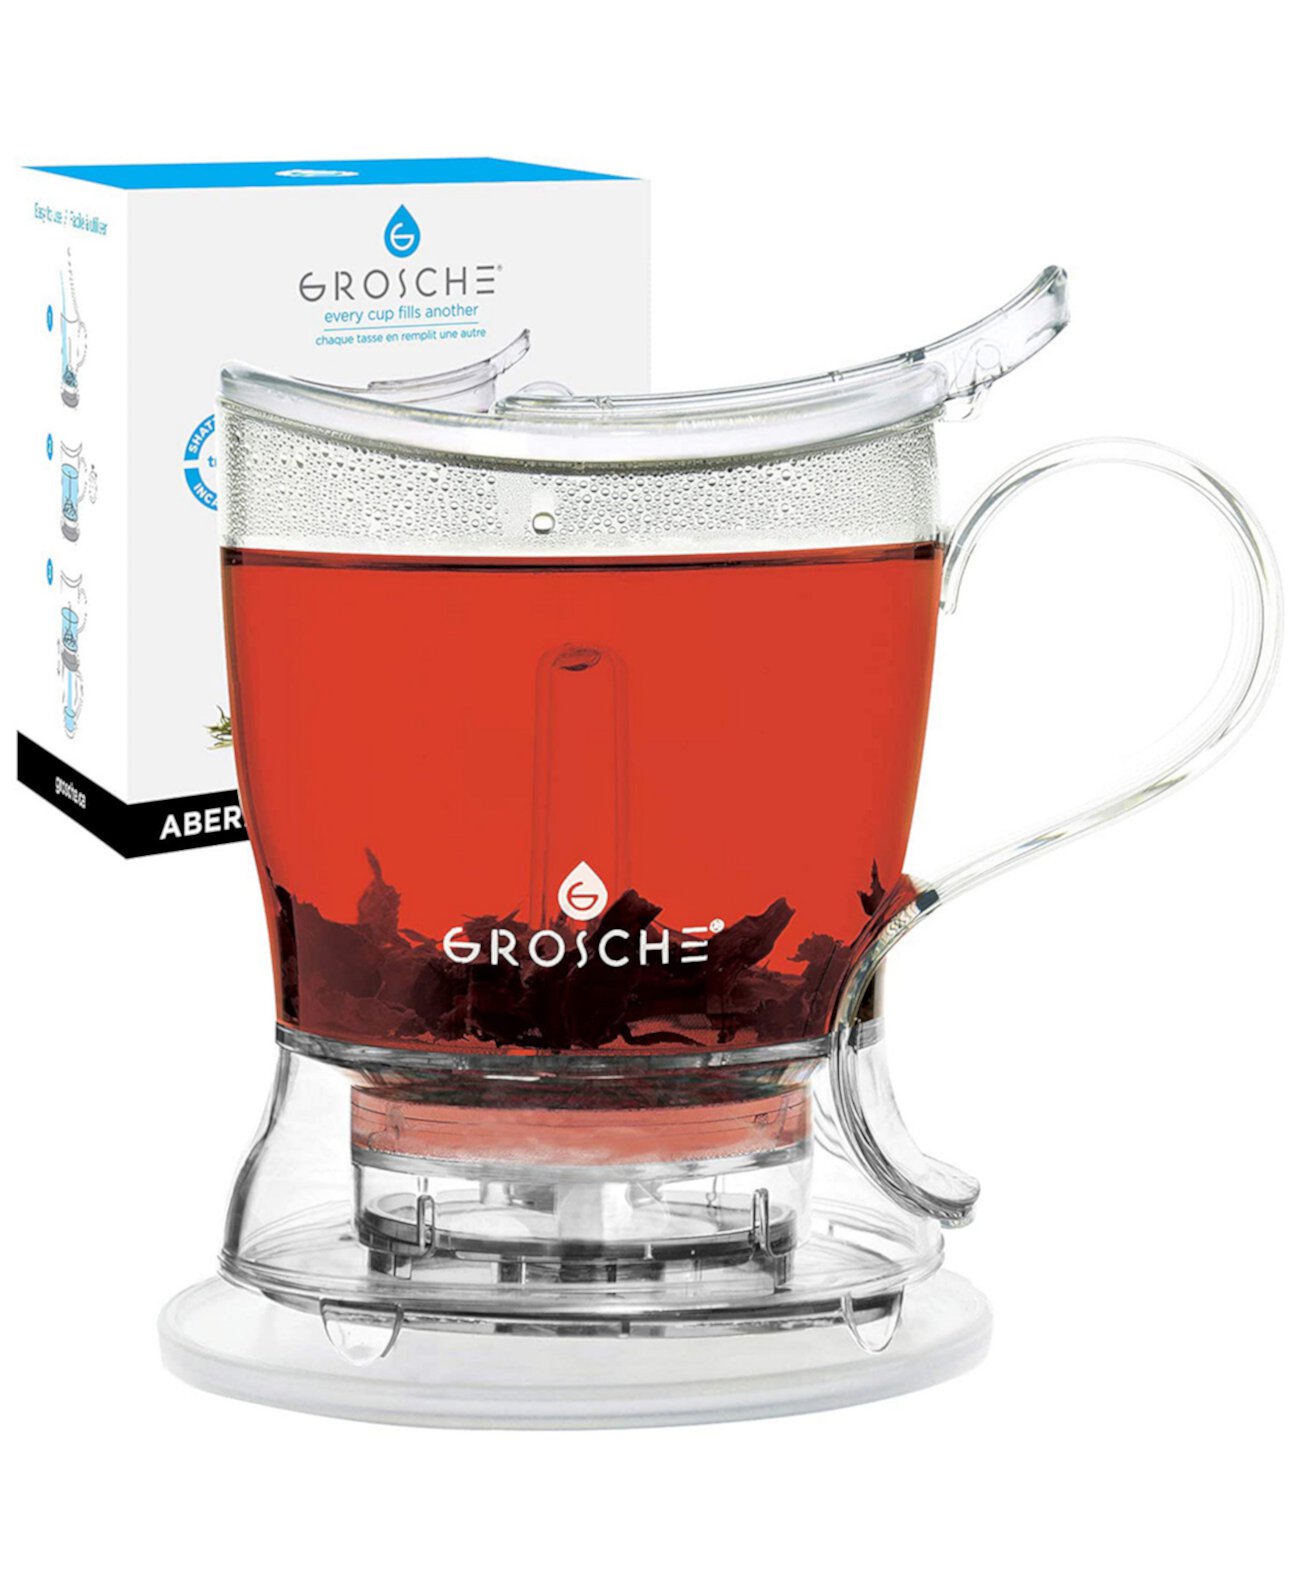 Aberdeen Smart Tea Maker and Tea Steeper, чайник с нижней дозировкой, 34 жидких унции Grosche